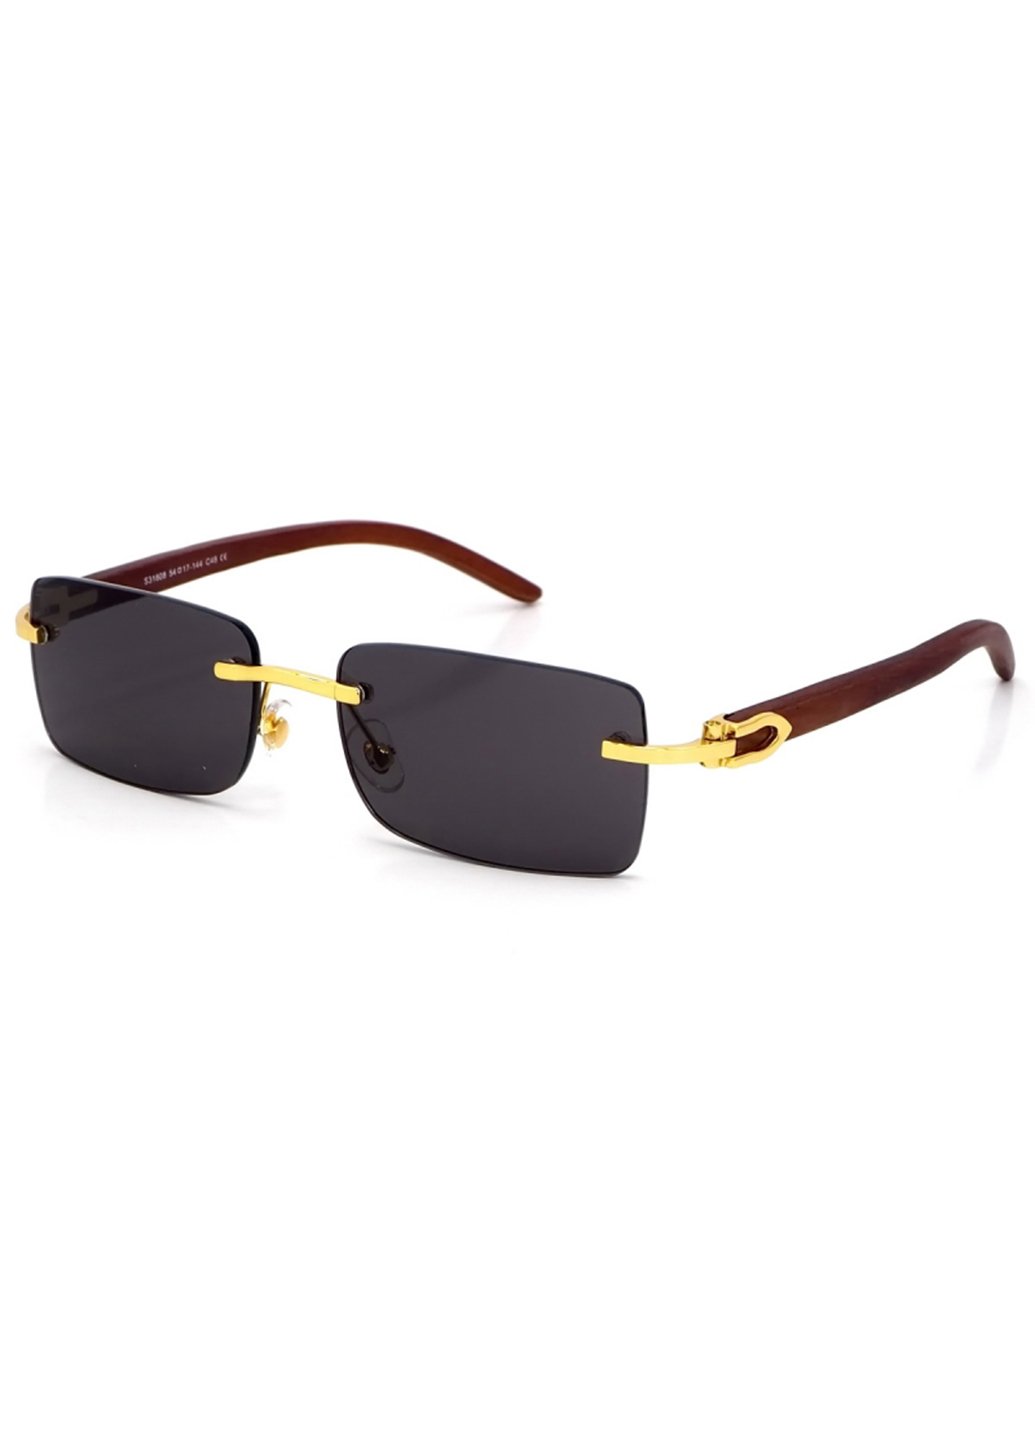 Купить Женские солнцезащитные очки Merlini с поляризацией S31808 117010 - Золотистый в интернет-магазине